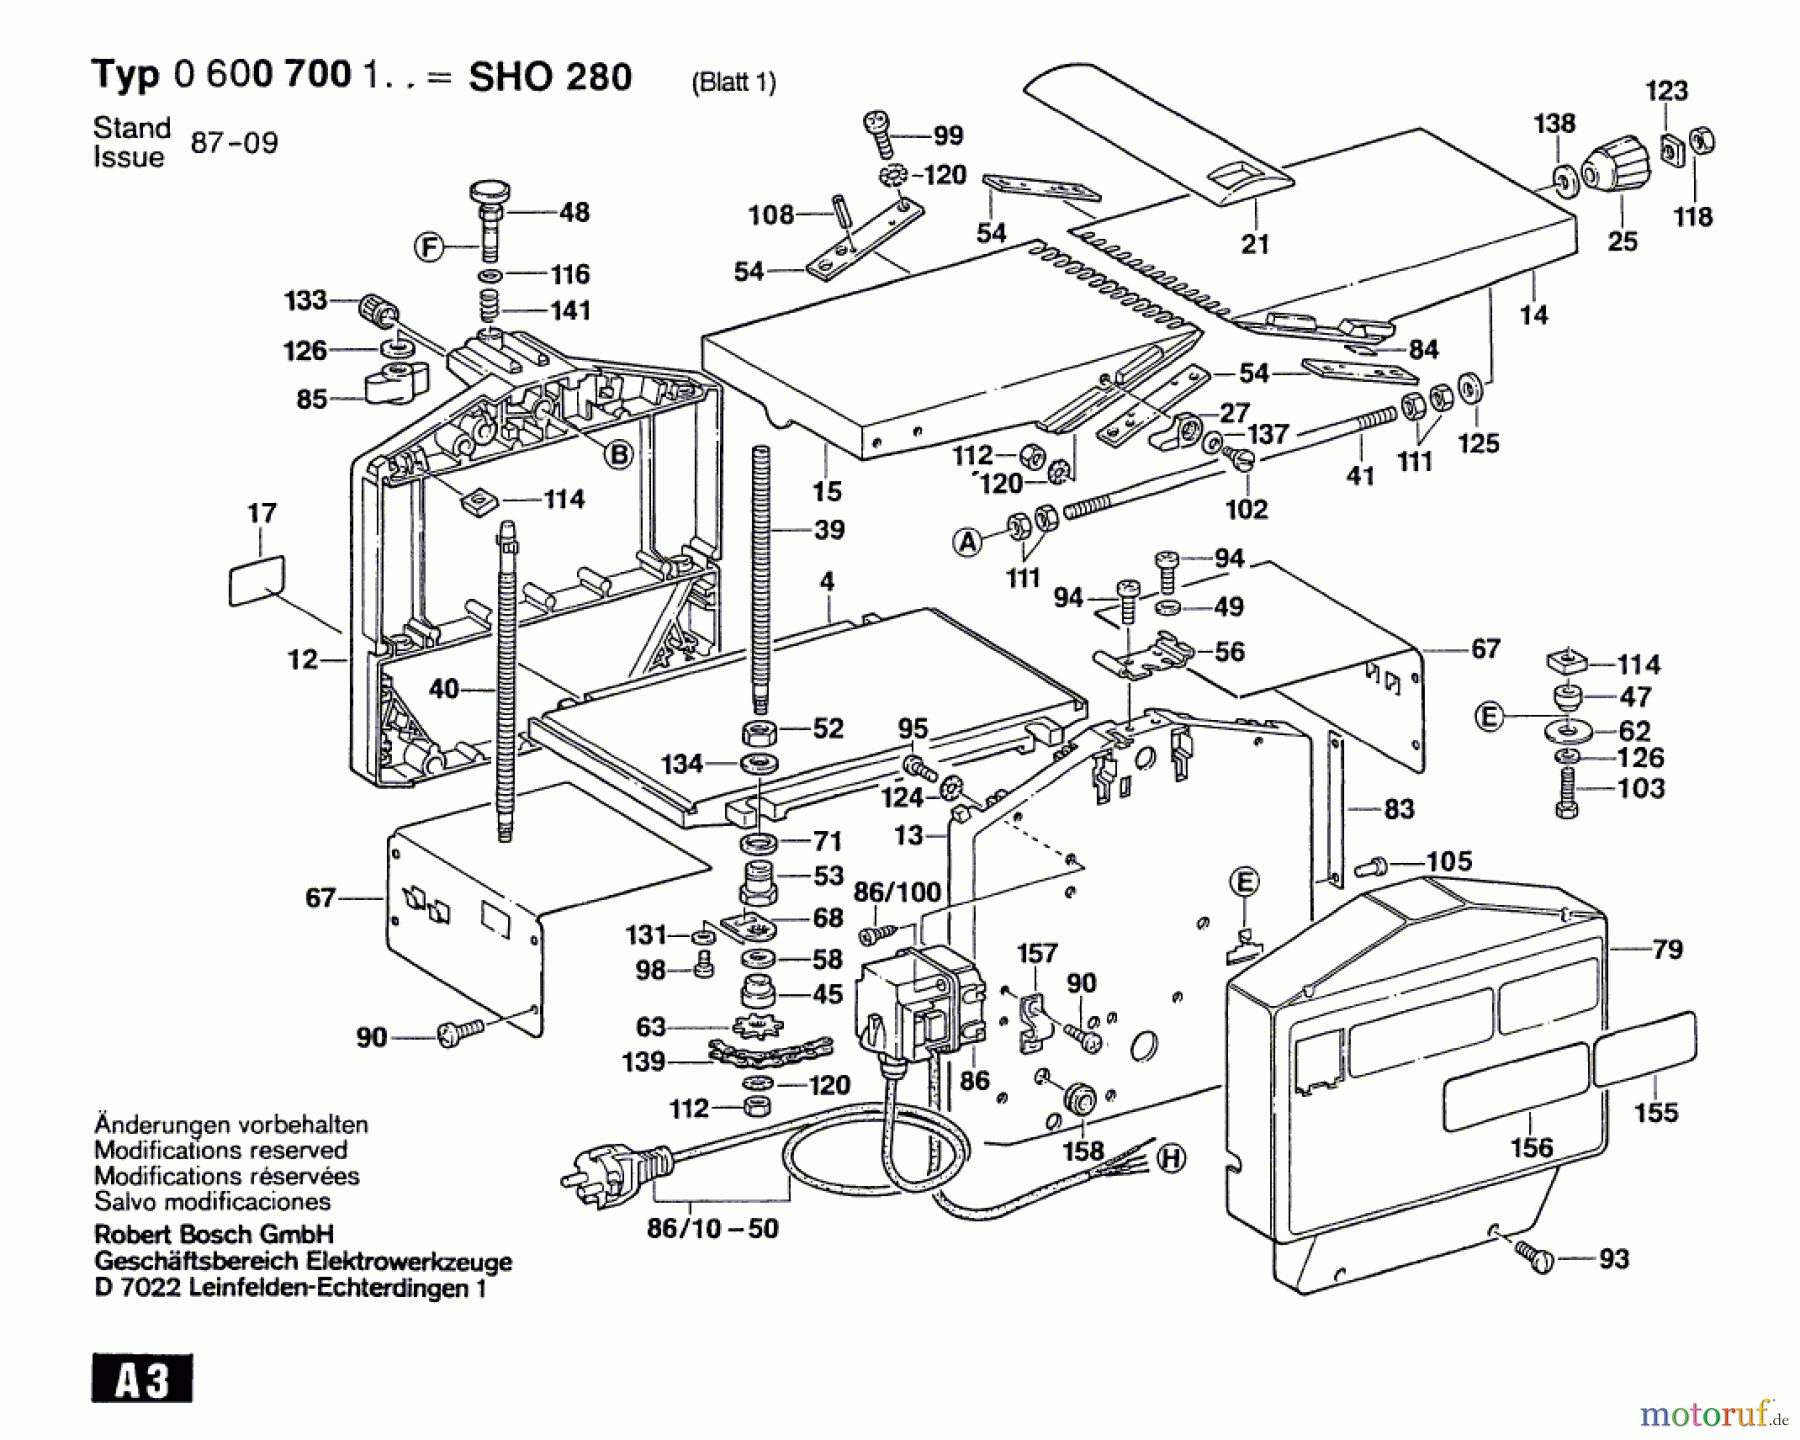  Bosch Werkzeug Abricht/Dickenhobel SHO 280 Seite 1